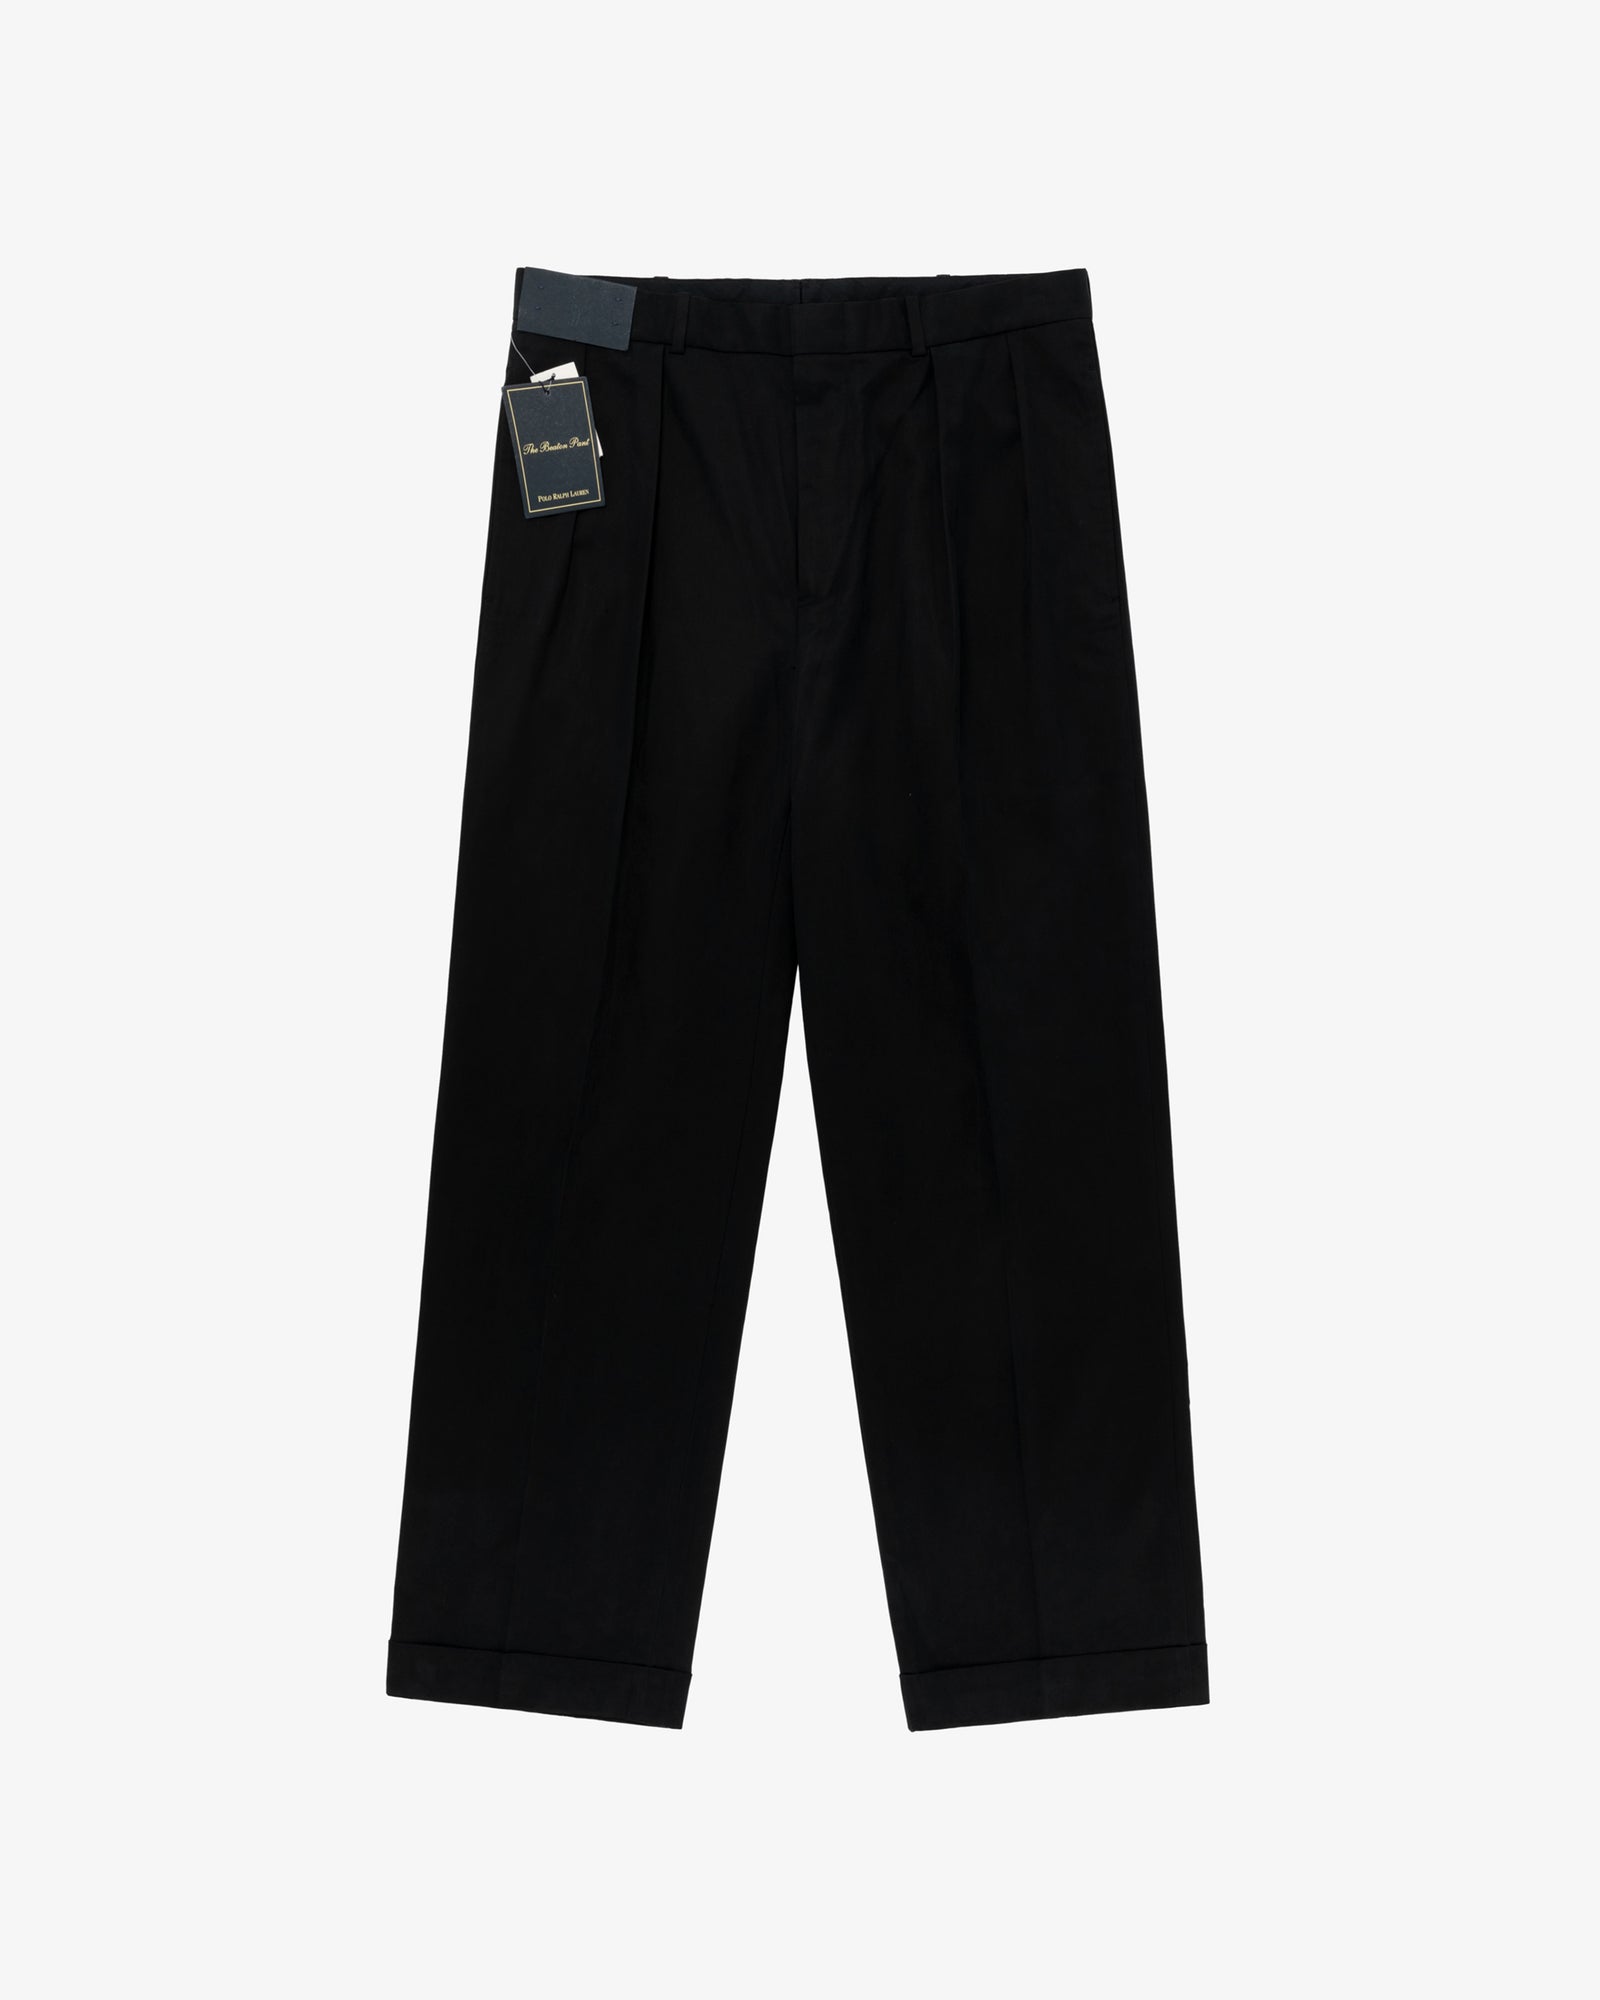 Lauren Ralph Lauren Mens Norton Wool Blend Plaid Suit Pants Trousers BHFO  9319 | eBay